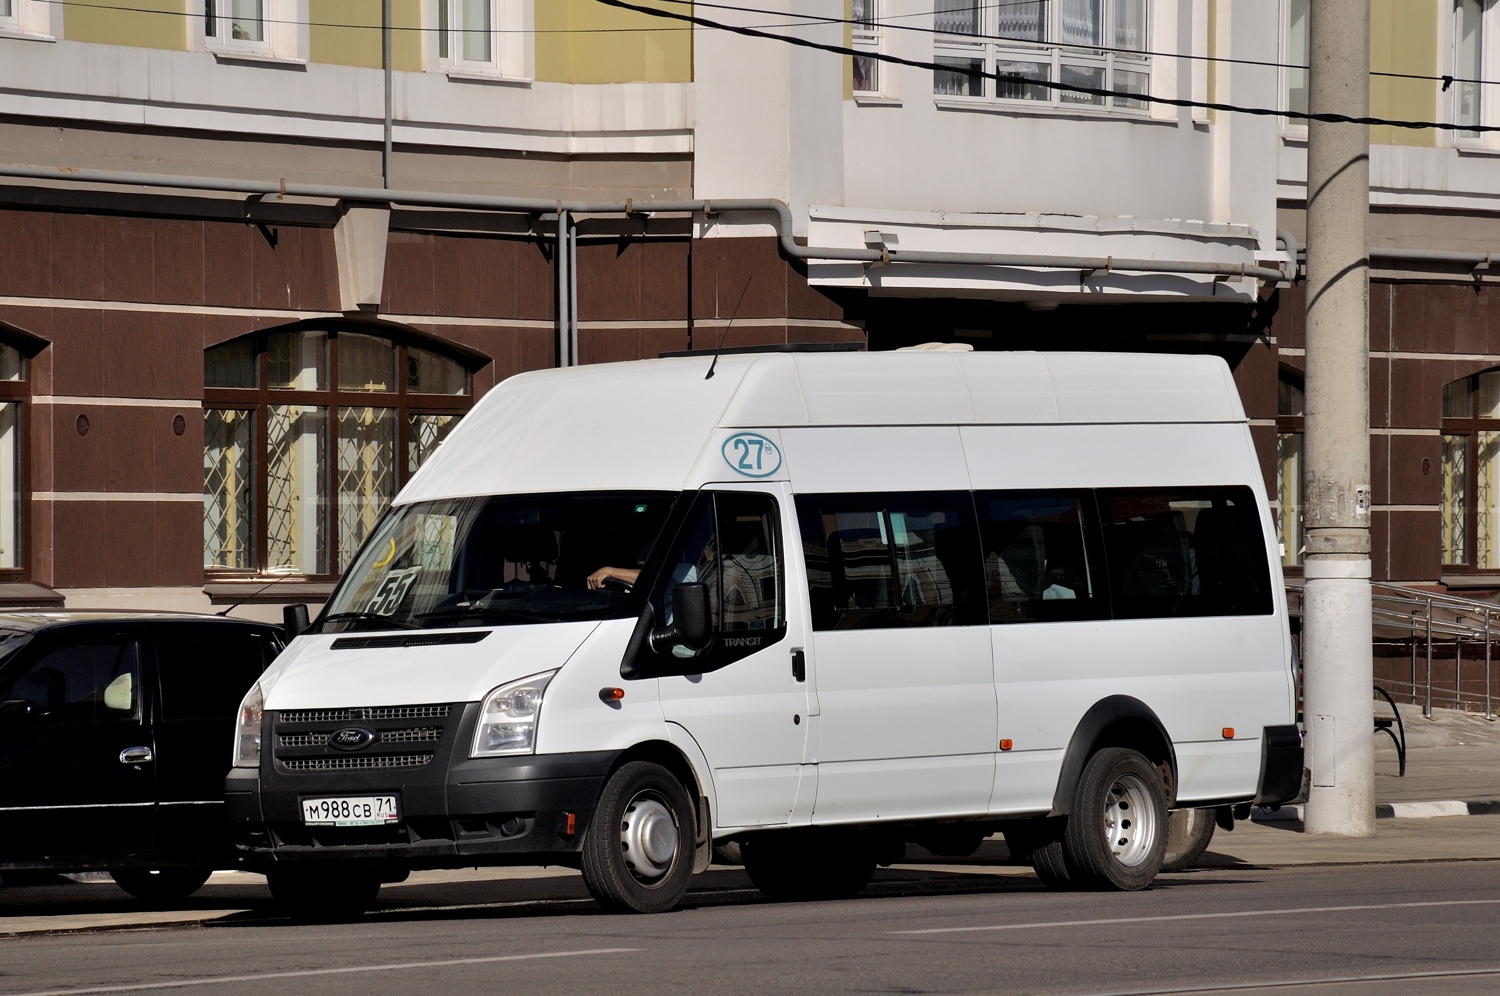 Tula, Имя-М-3006 (Z9S) (Ford Transit) № М 988 СВ 71